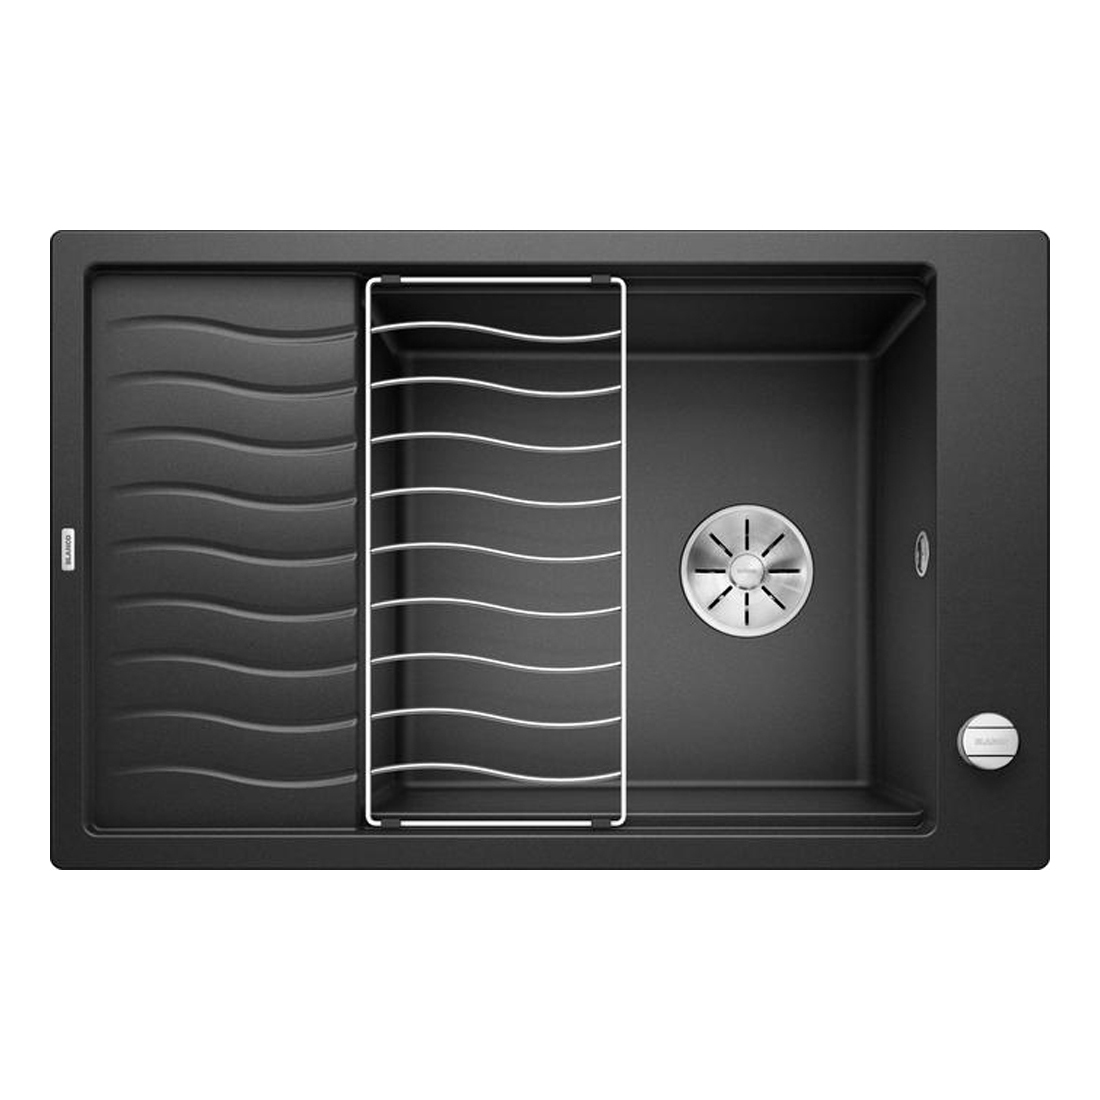 Кухонная мойка Blanco Elon XL 6S антрацит кухонная мойка florentina комби 650 антрацит